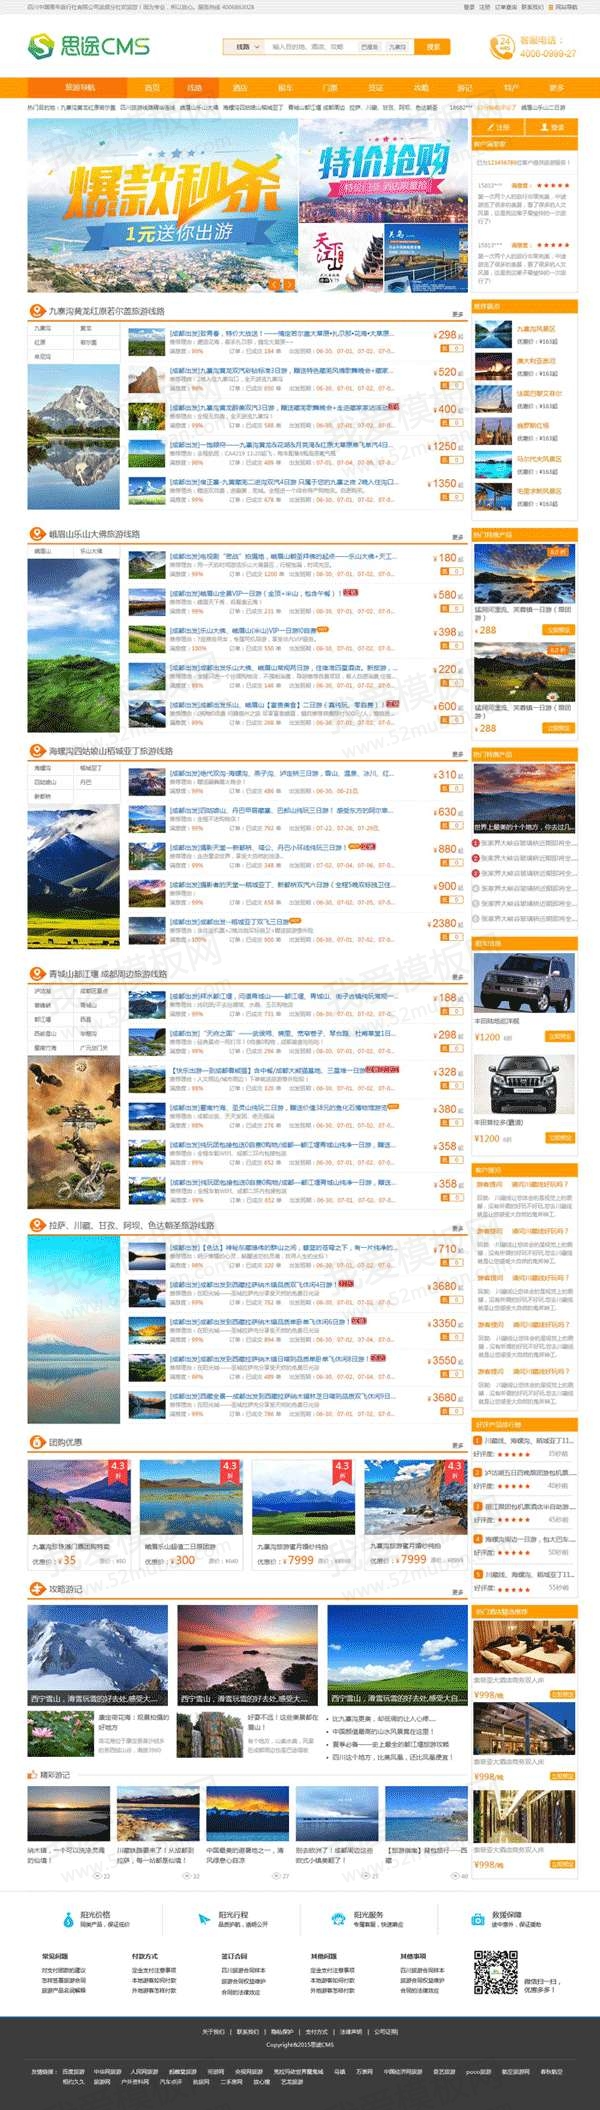 橙色的在线旅游预订网站首页模板psd素材缩略图